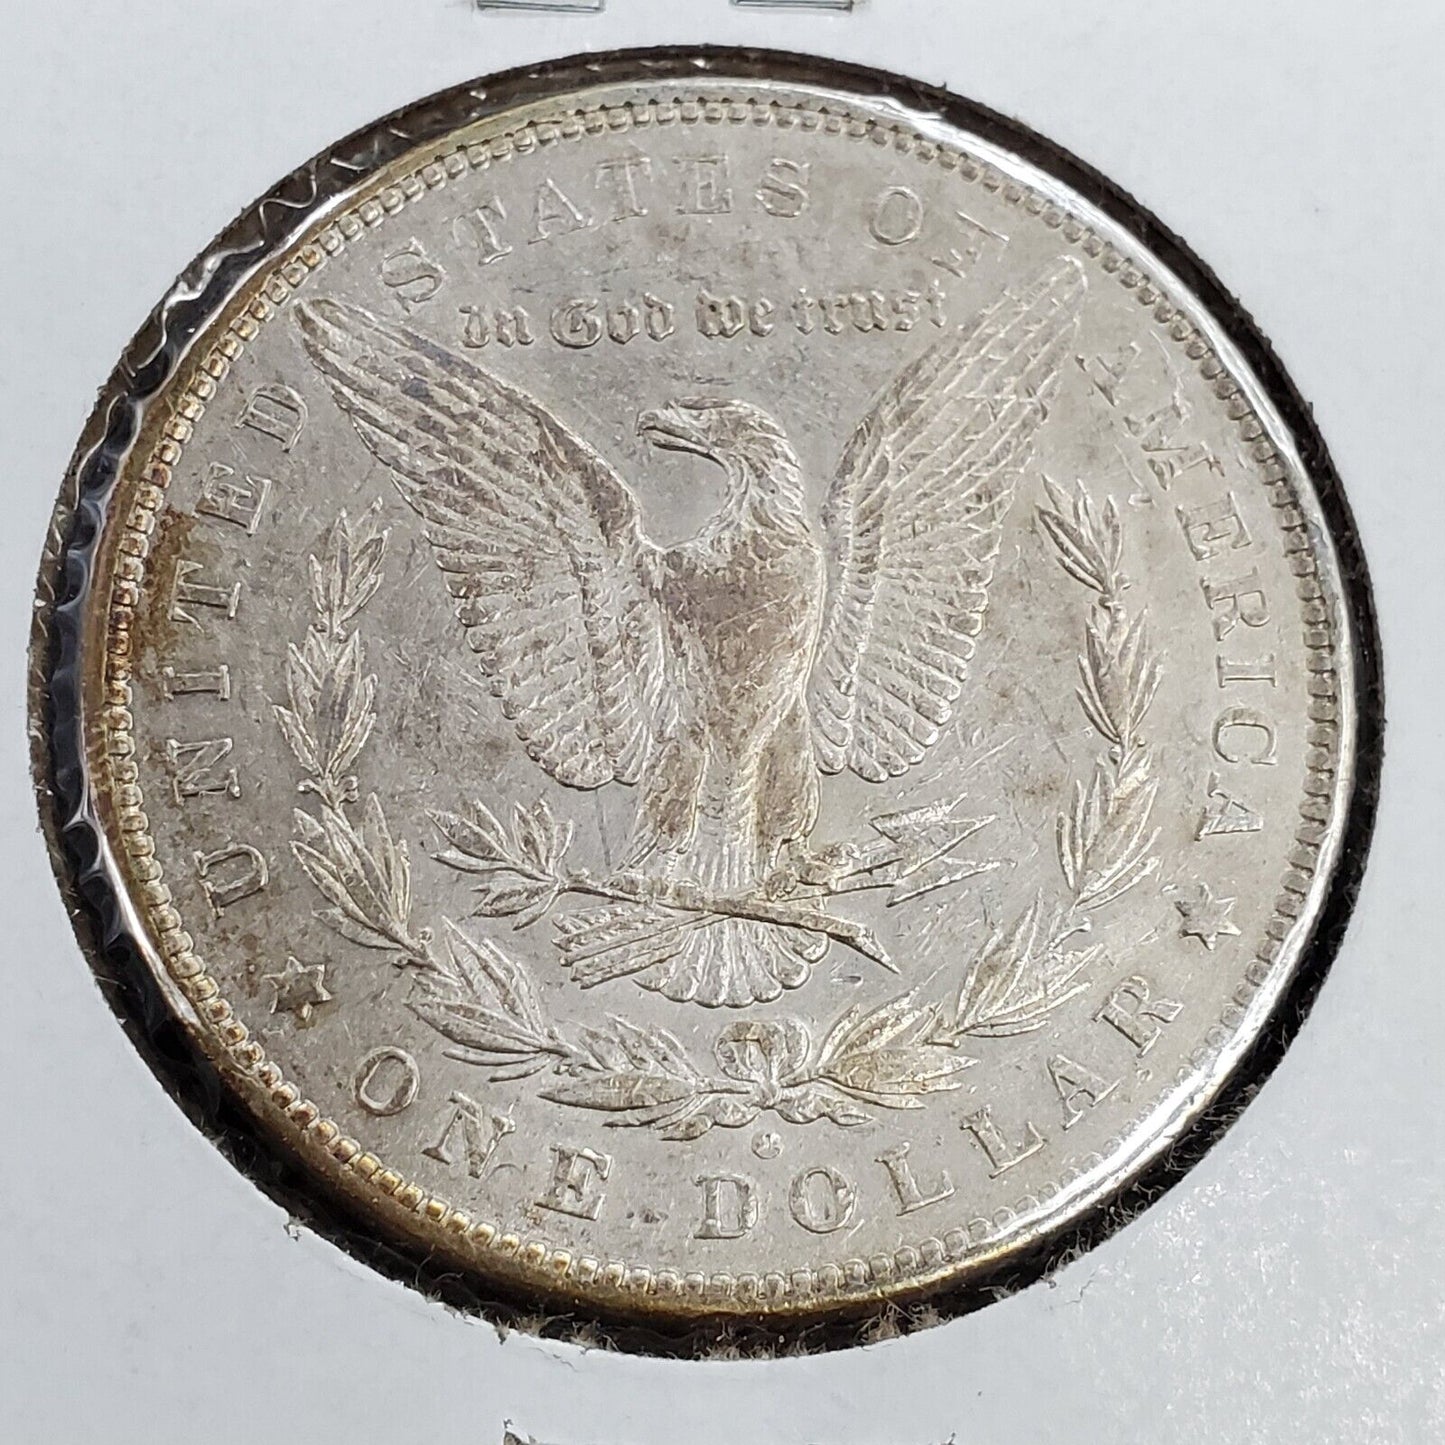 1880 O Micro o $1 Morgan Silver Dollar Variety XF Details